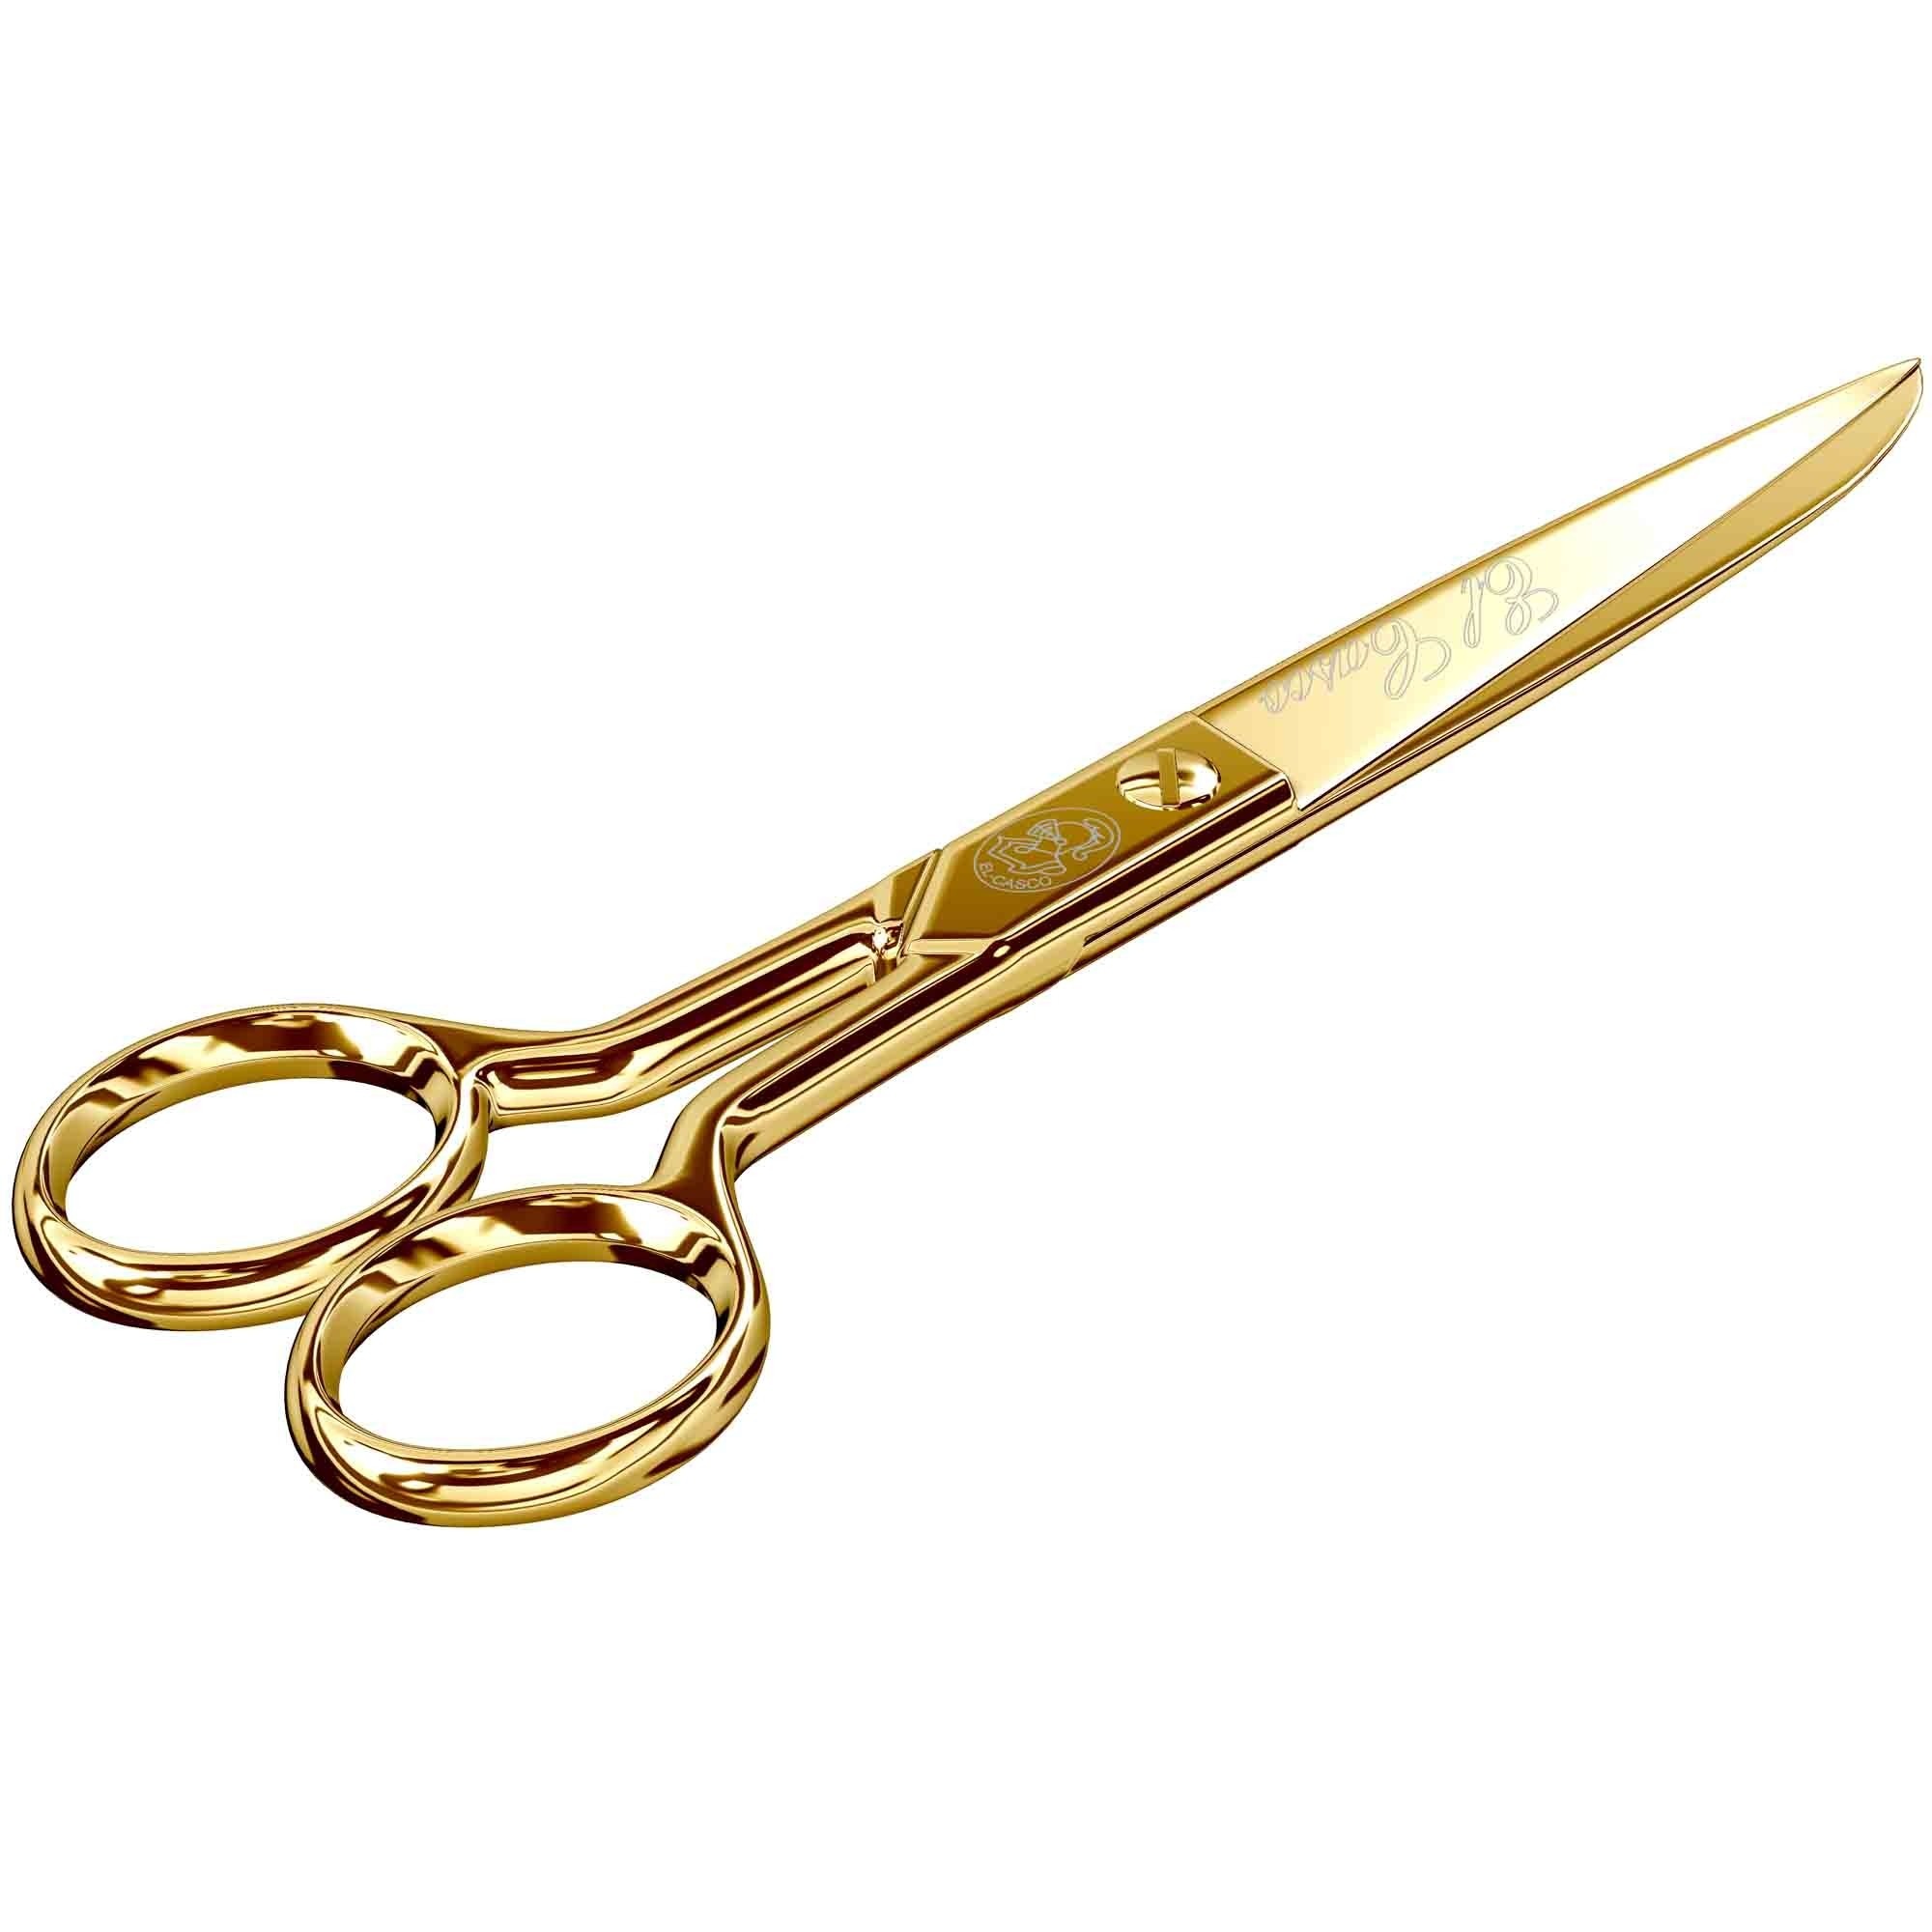 Gold Scissors